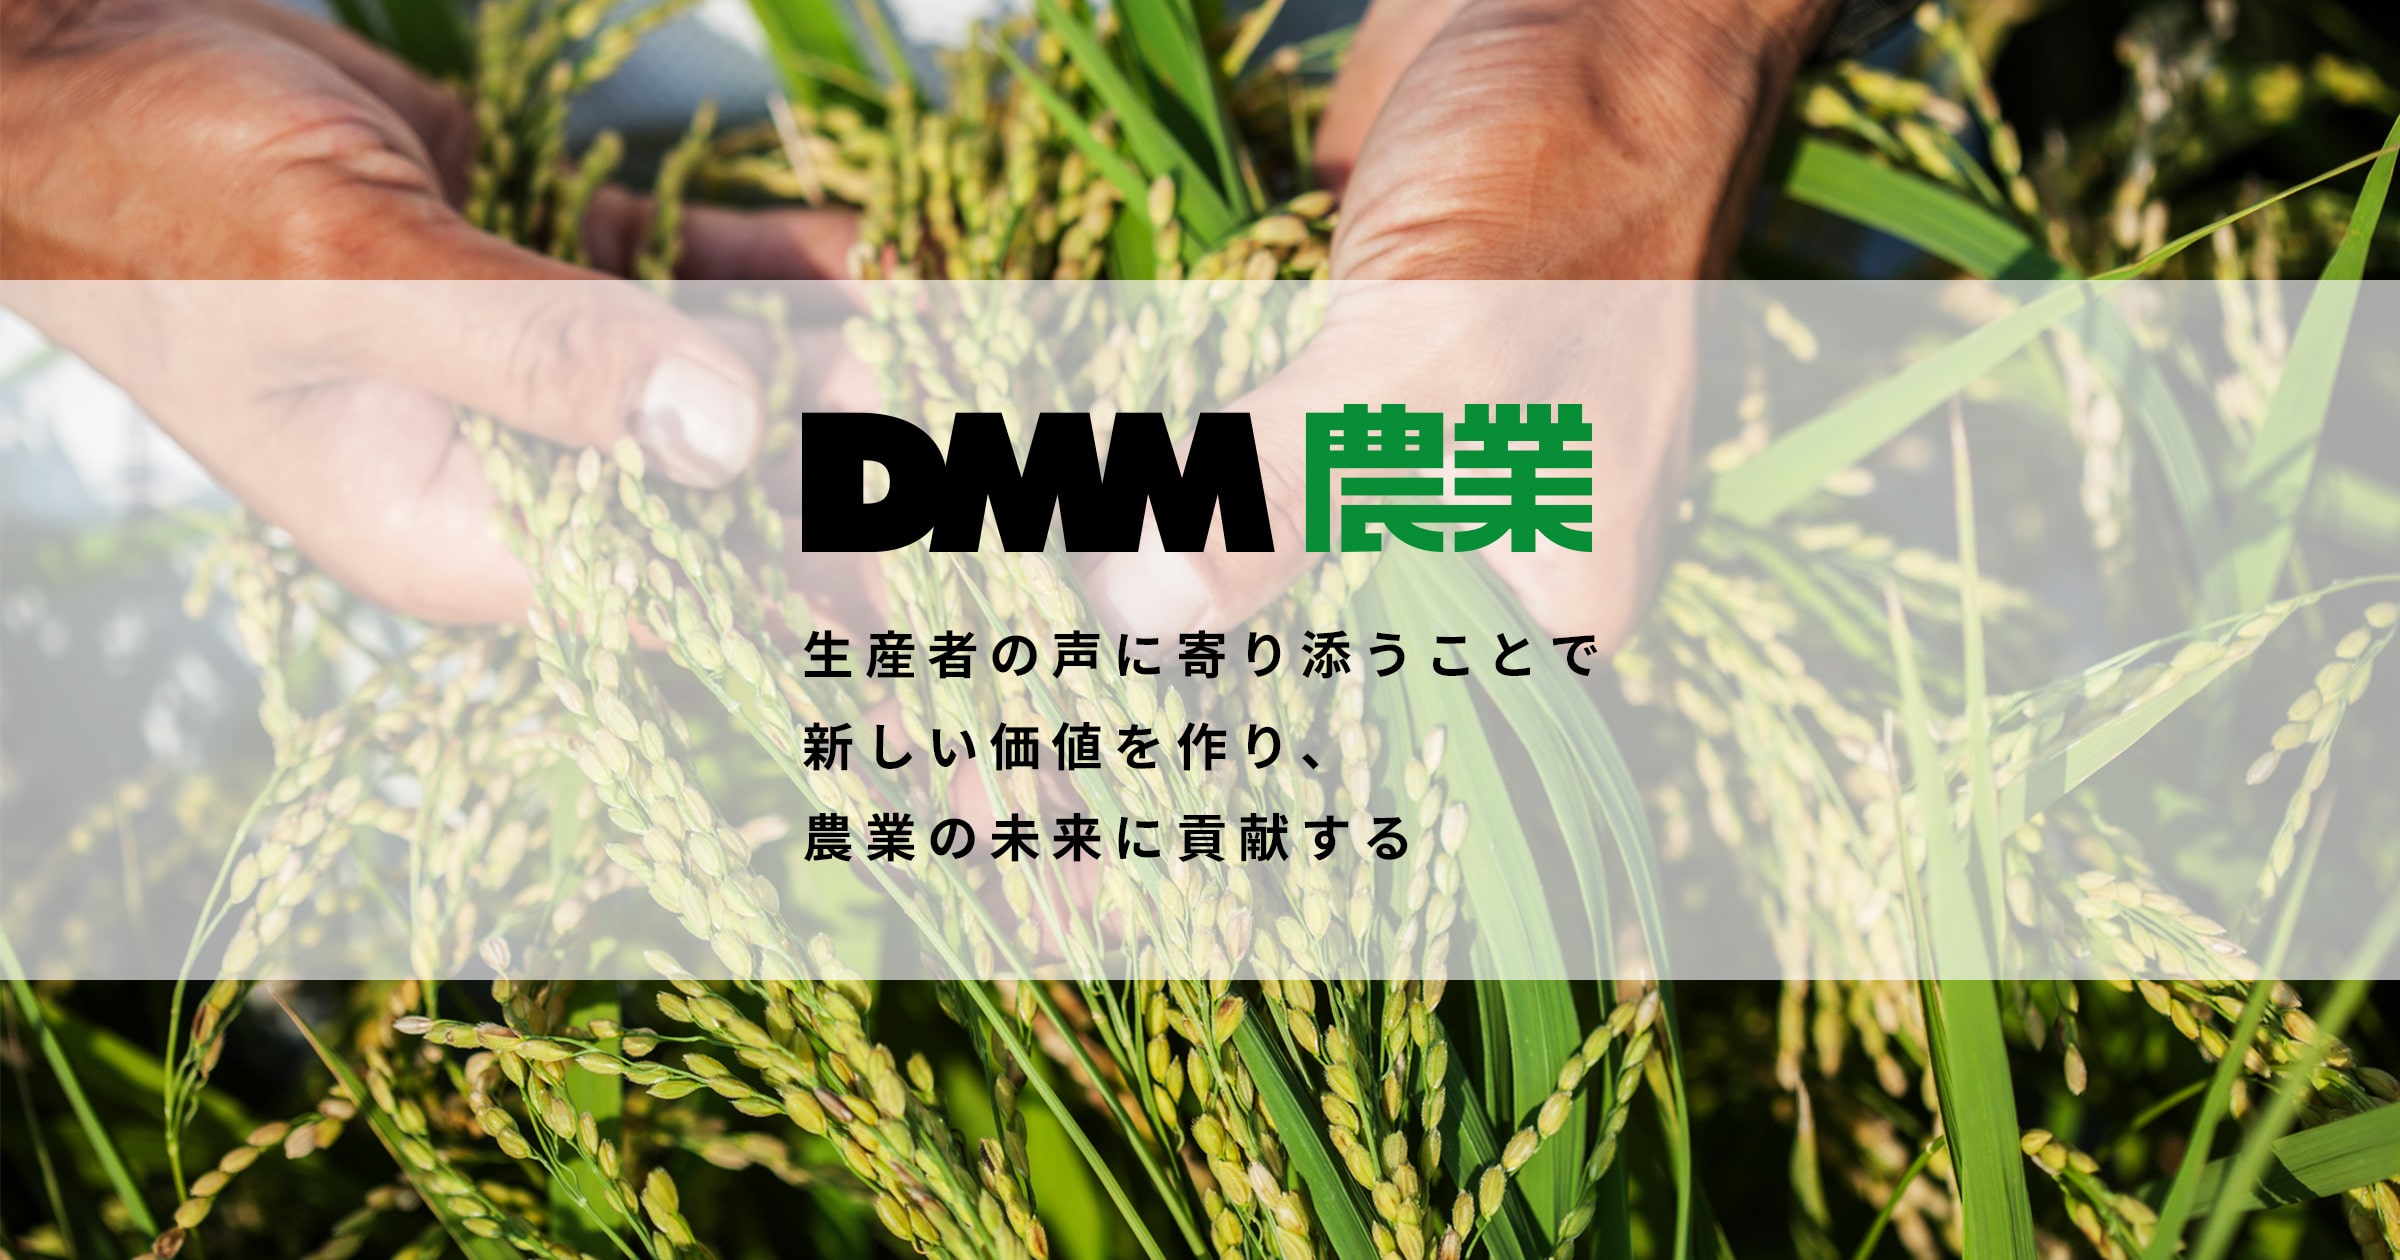 Dmm 農業 新しい価値をつくり 農業の未来に貢献する